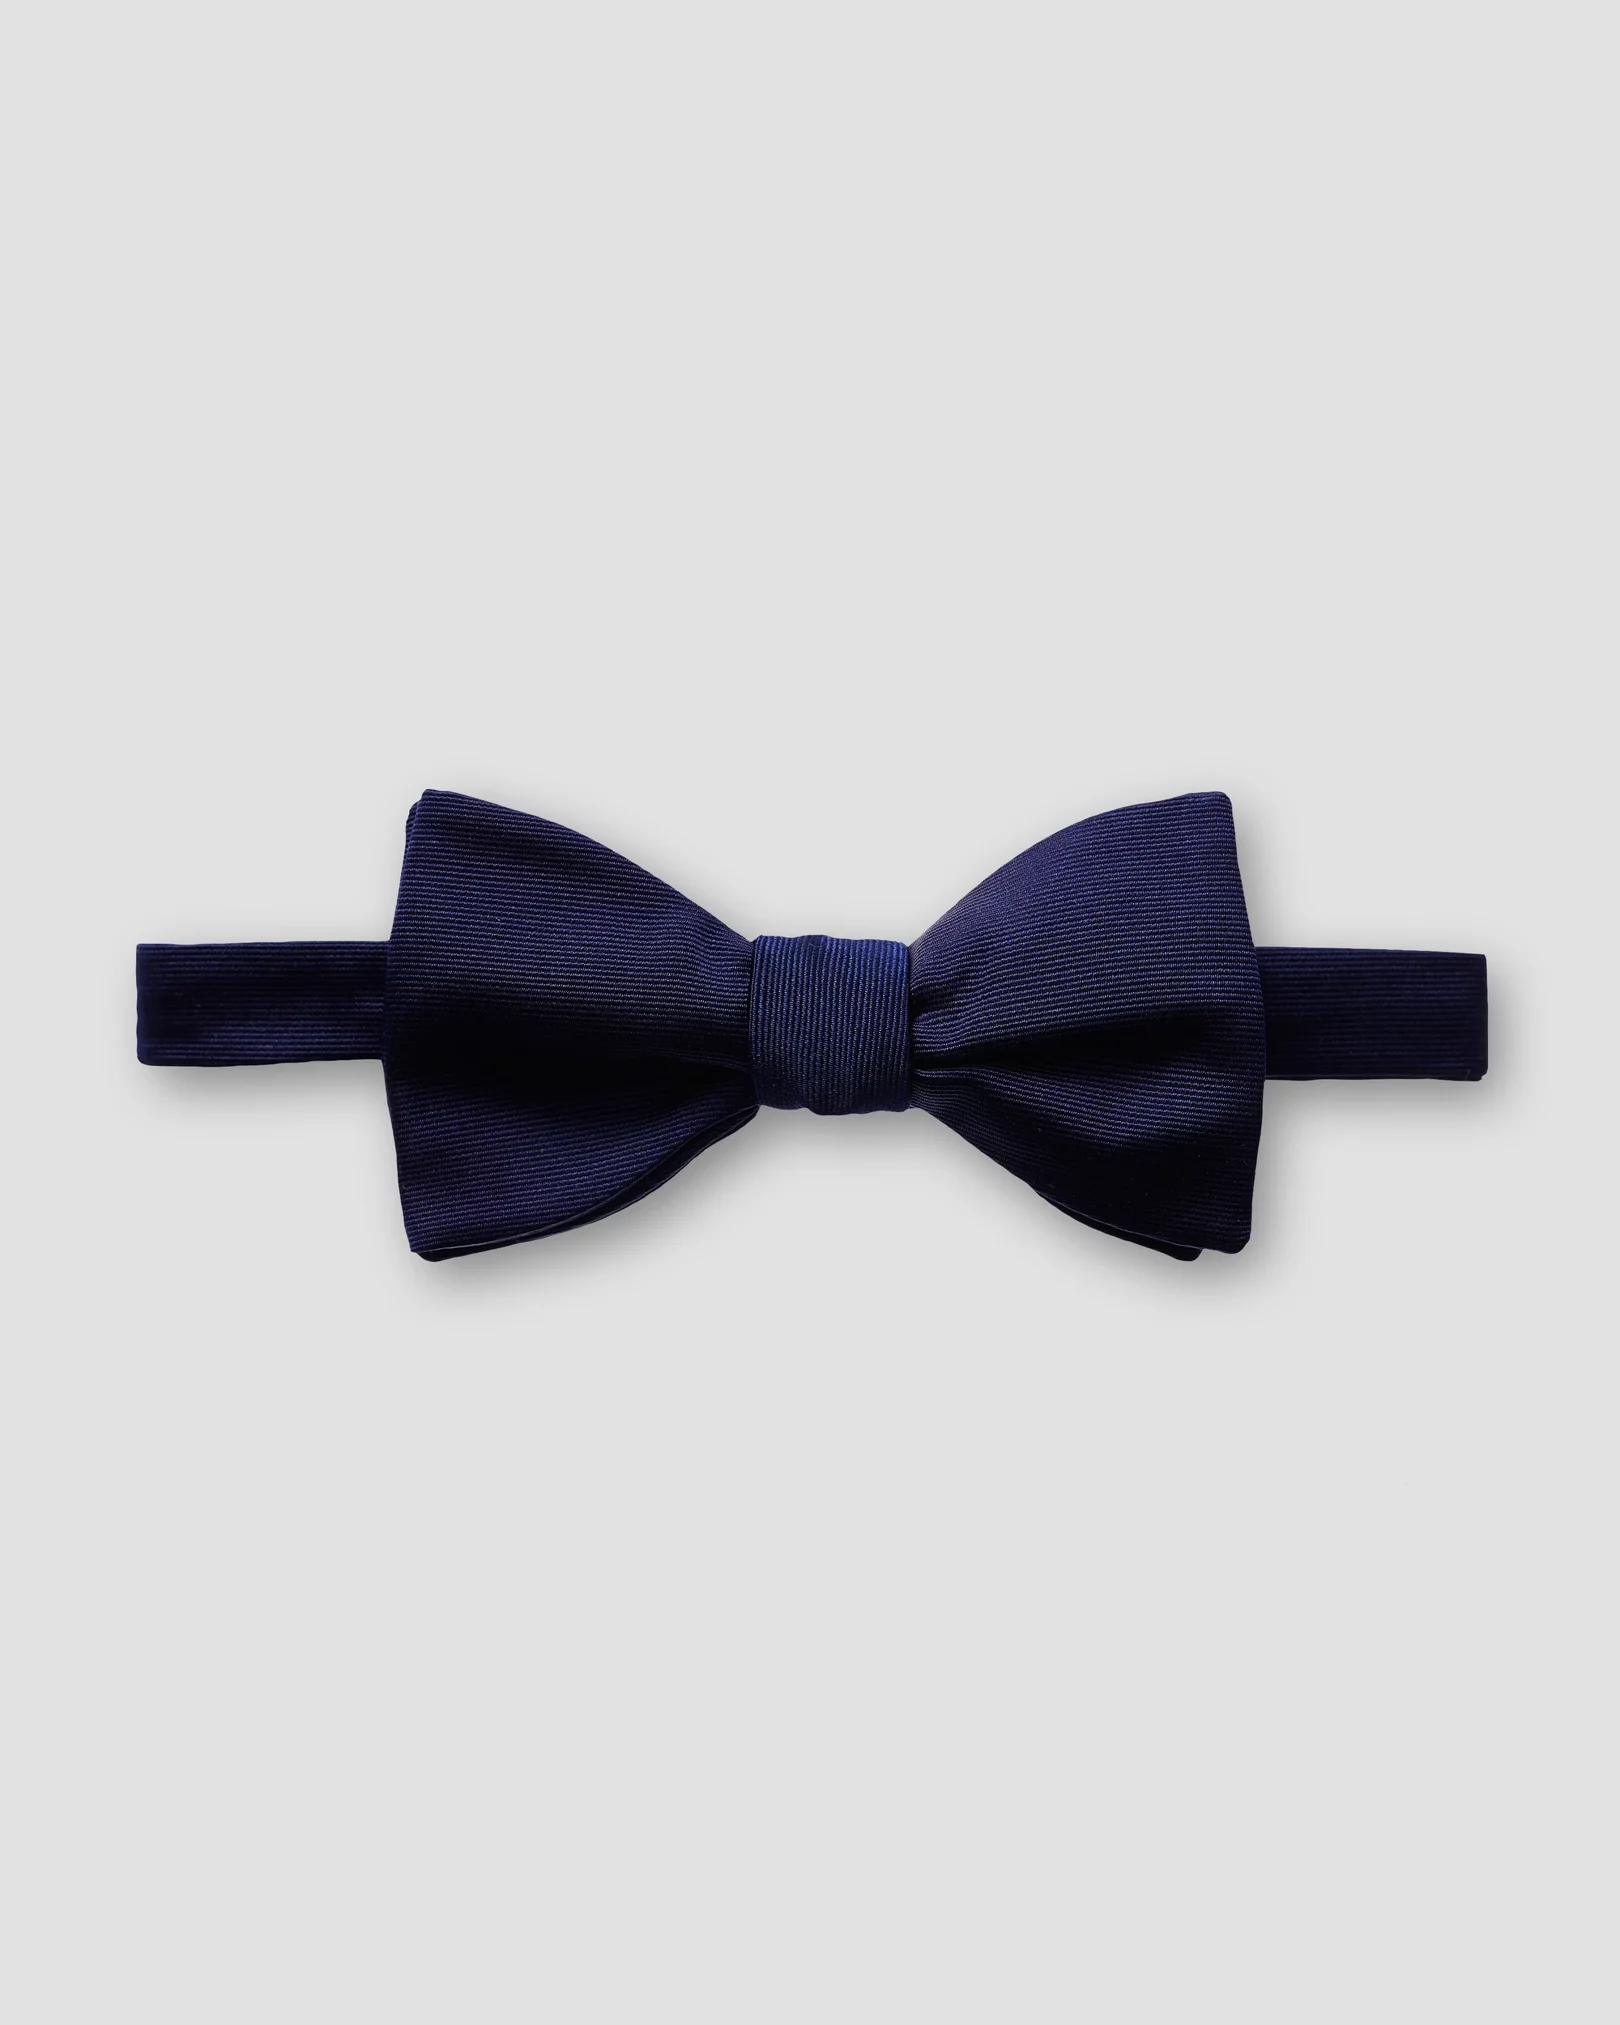 Eton - navy bow tie ready tied